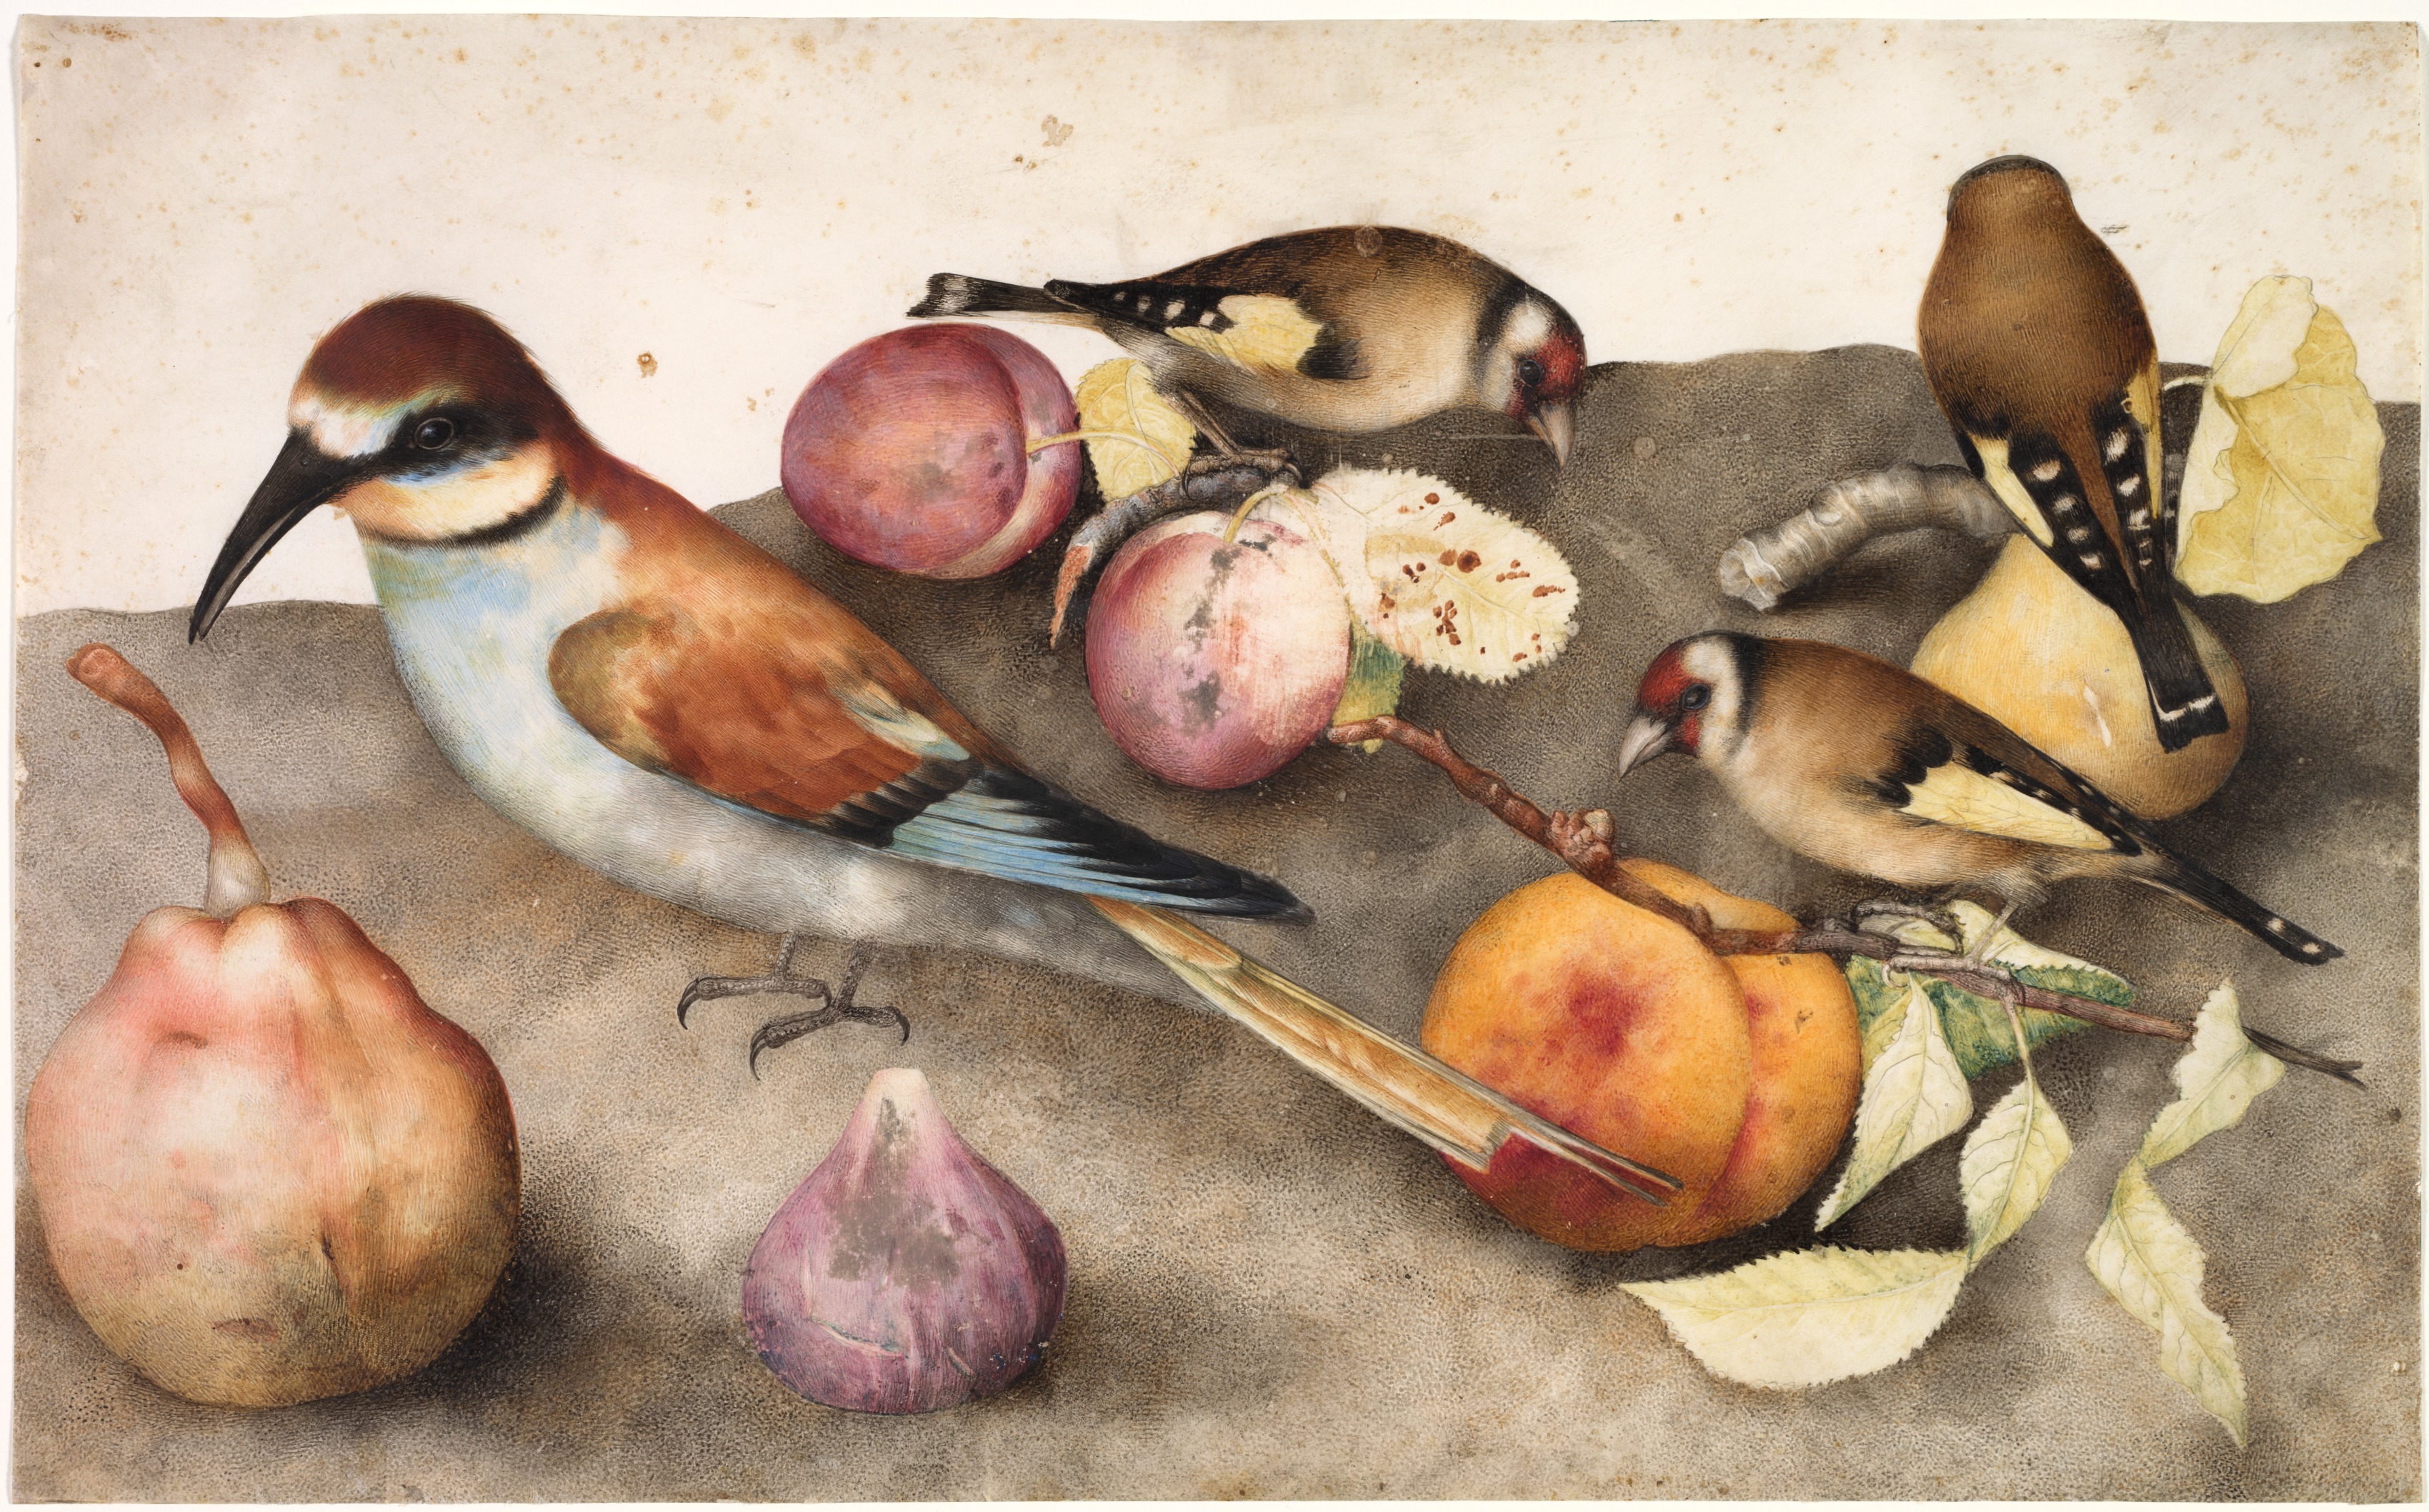 静物系列鸟和水果 by 乔万娜 加佐尼 - 17世纪 - 25.7 x 41.6 厘米 克利夫兰艺术博物馆